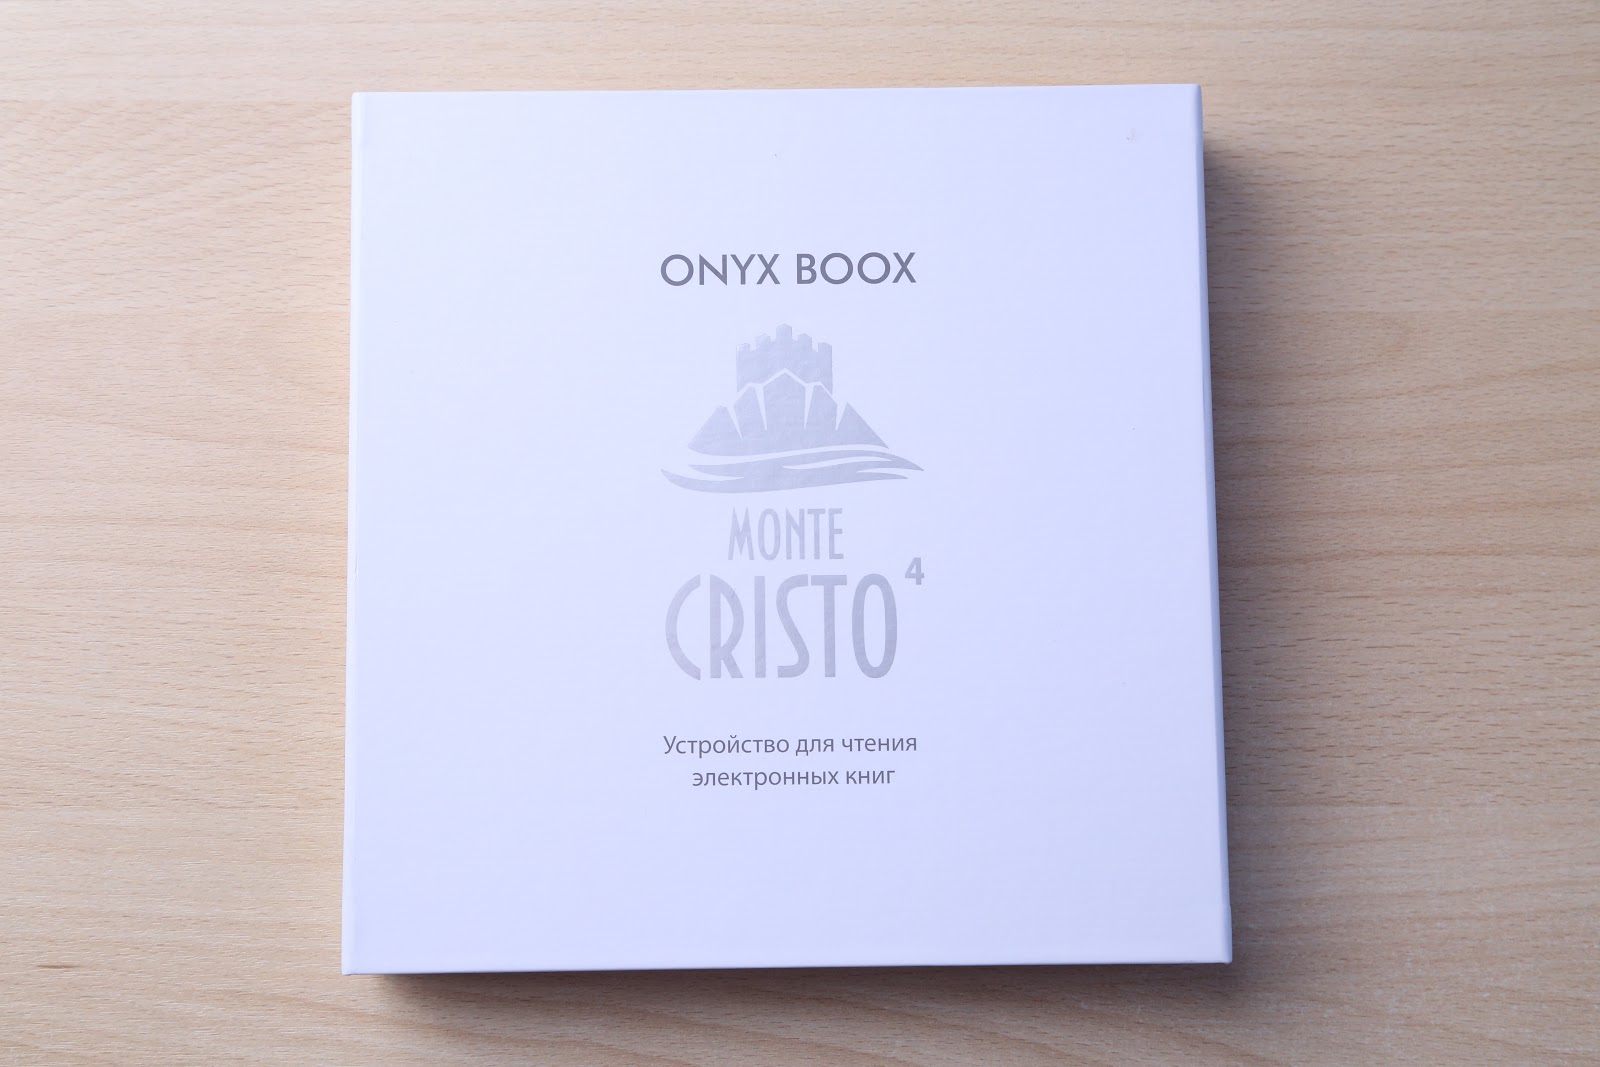 Когда чтение можно потрогать: обзор ONYX BOOX Monte Cristo 4 - 4